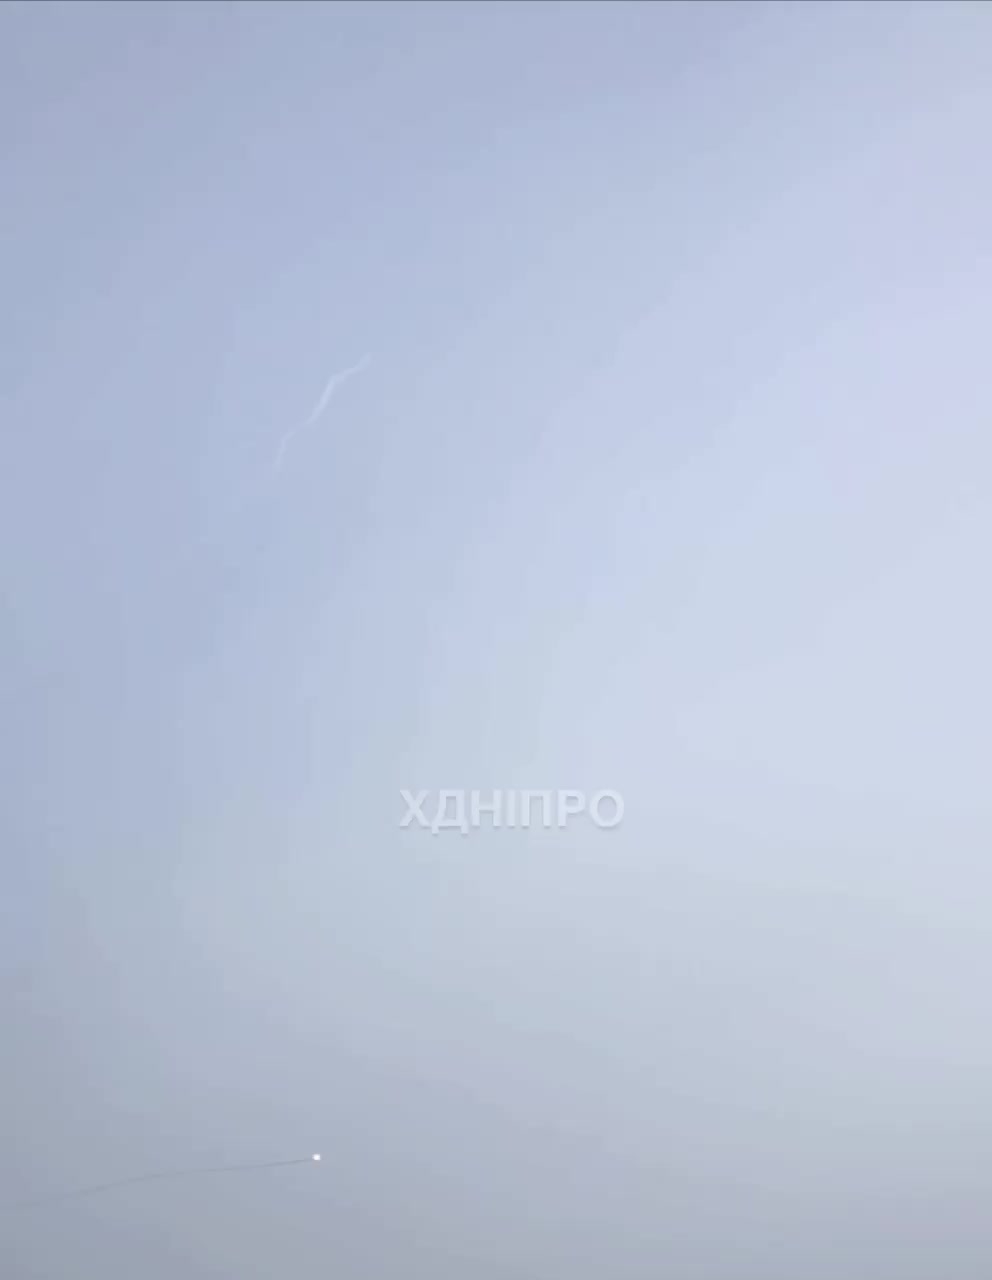 Die Luftverteidigung hat eine Rakete über der Stadt Dnipro abgeschossen